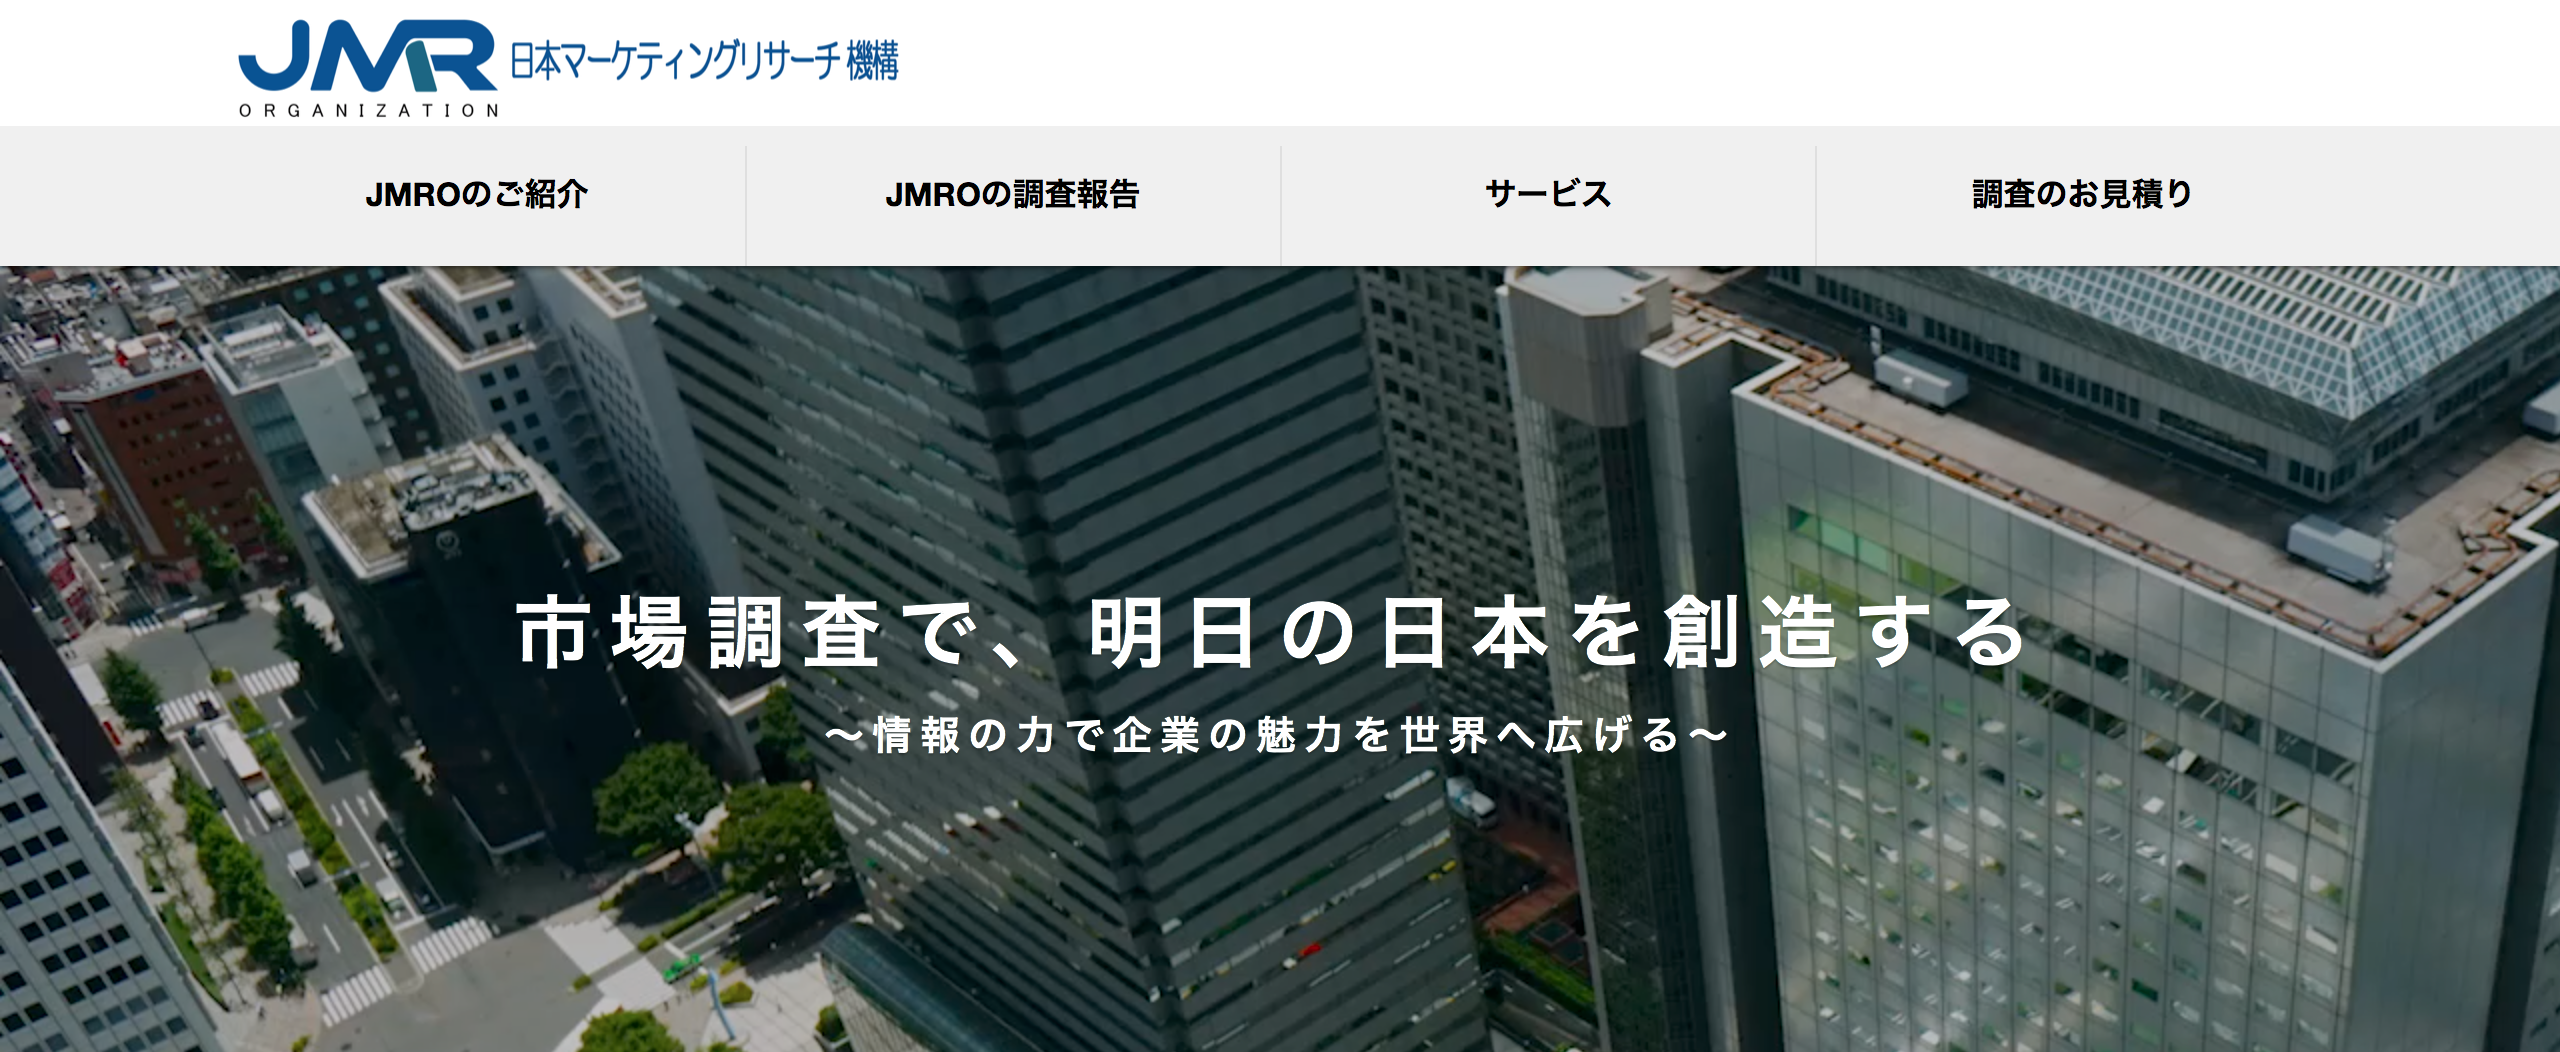 日本マーケティングリサーチ機構_サイトtop